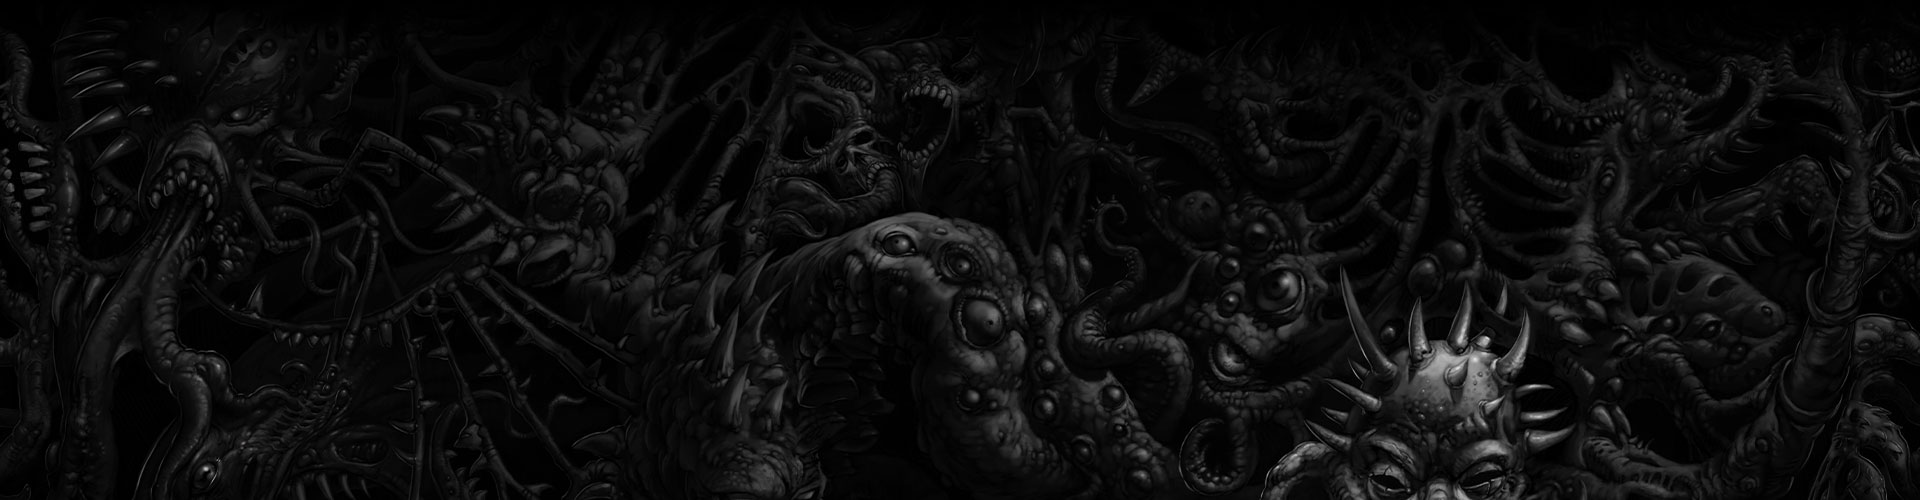 Un mur sombre composé de différents monstres.